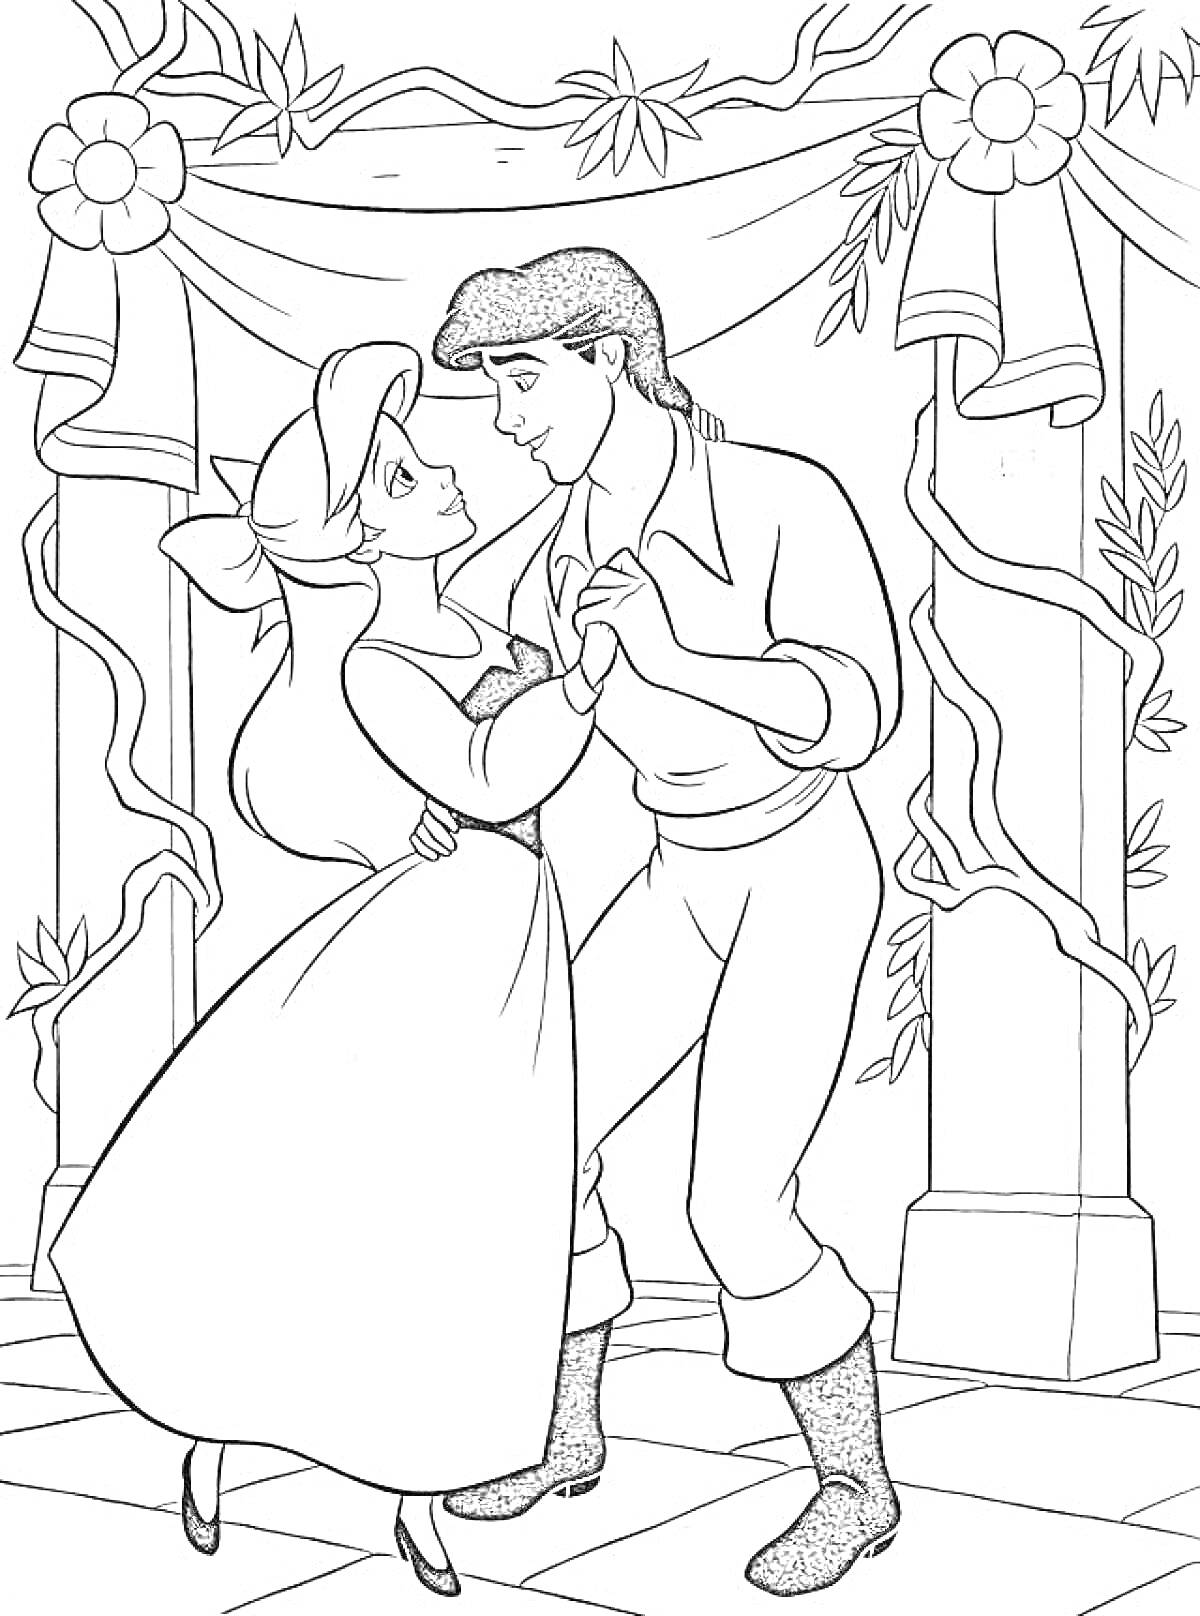 Ариэль и принц Эрик танцуют в украшенном зале с цветами и лентами